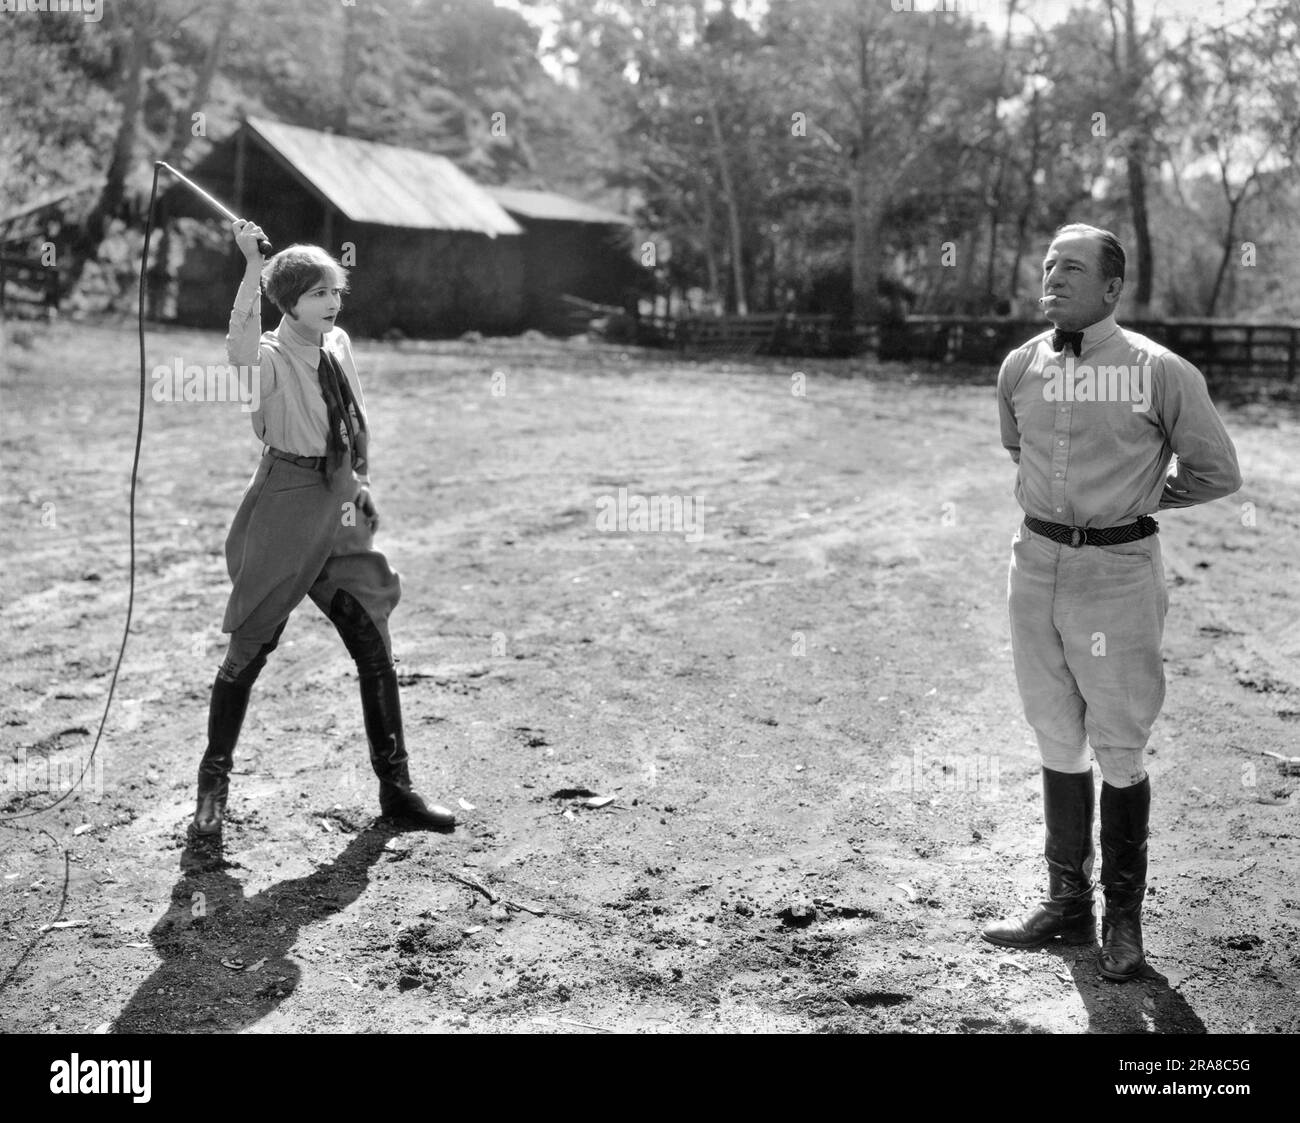 Hollywood, Kalifornien: 16. März 1925 Schauspielerin Anna Q. Nilsson bereitet sich darauf vor, eine Zigarette aus dem Mund des australischen Star-Athleten Snowy Baker mit einer Peitsche zu schlagen. Baker hat ihr den Stunt beigebracht und sie soll die einzige Frau in Amerika sein, die das kann. Stockfoto